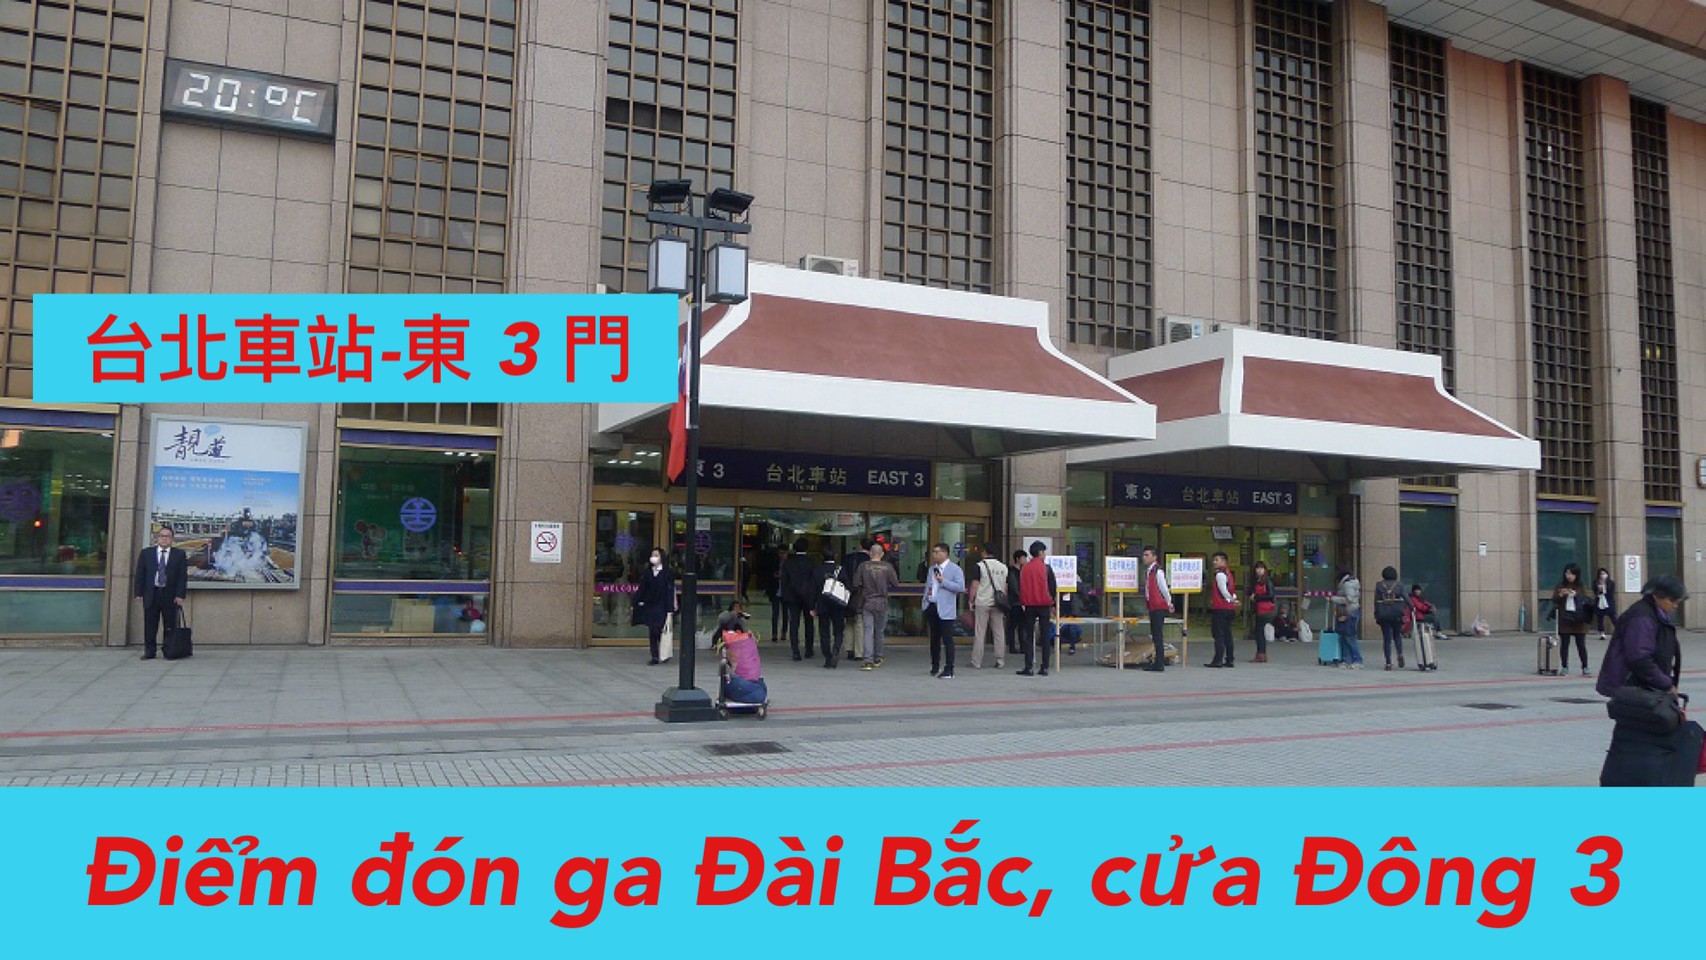 Ngày 1: 6:30 Đón tại ga Đài Bắc tại （East 3)  台北車站 (東3門)